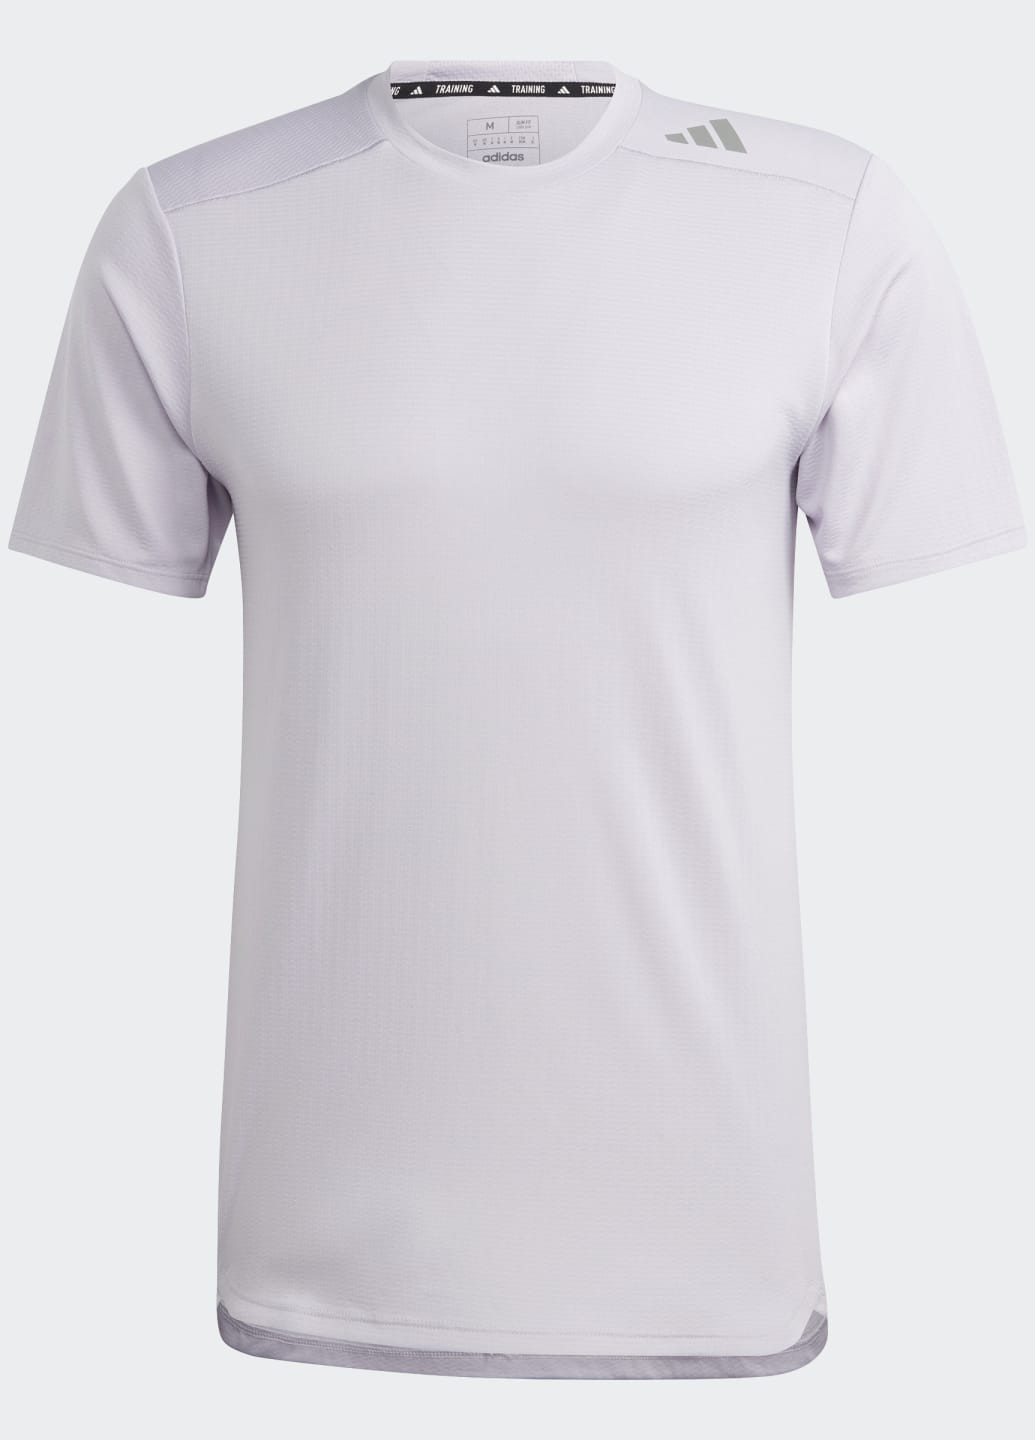 Фиолетовая тренировочная футболка designed 4 training heat.rdy hiit adidas